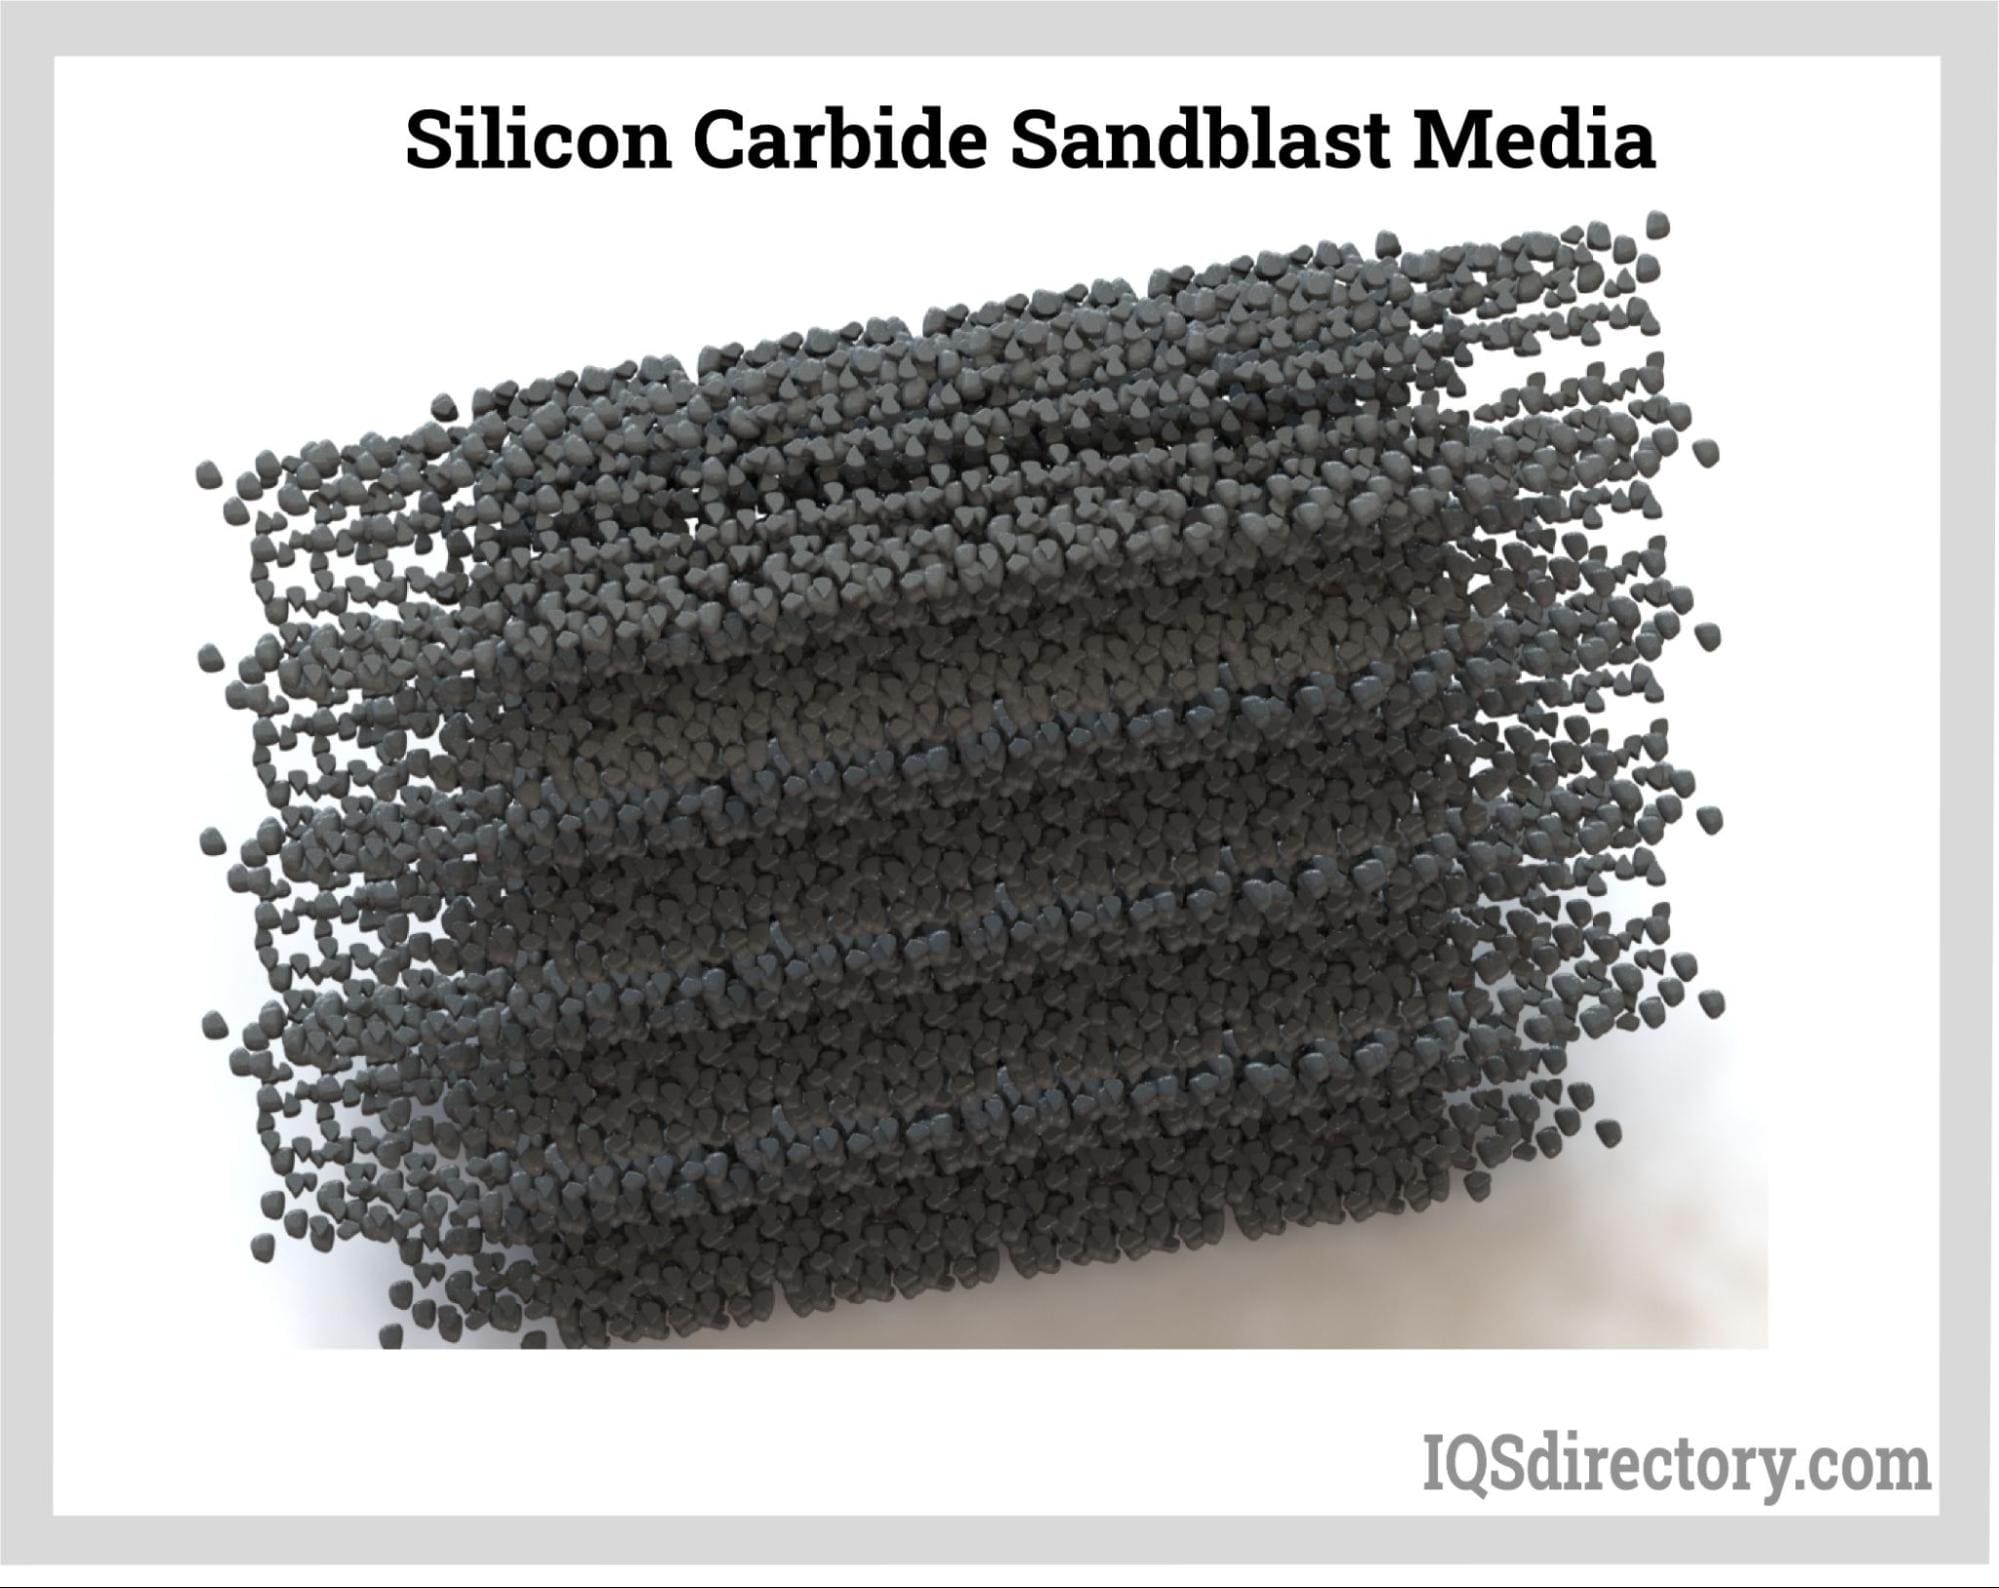 Silicon Carbide Sandblast Media